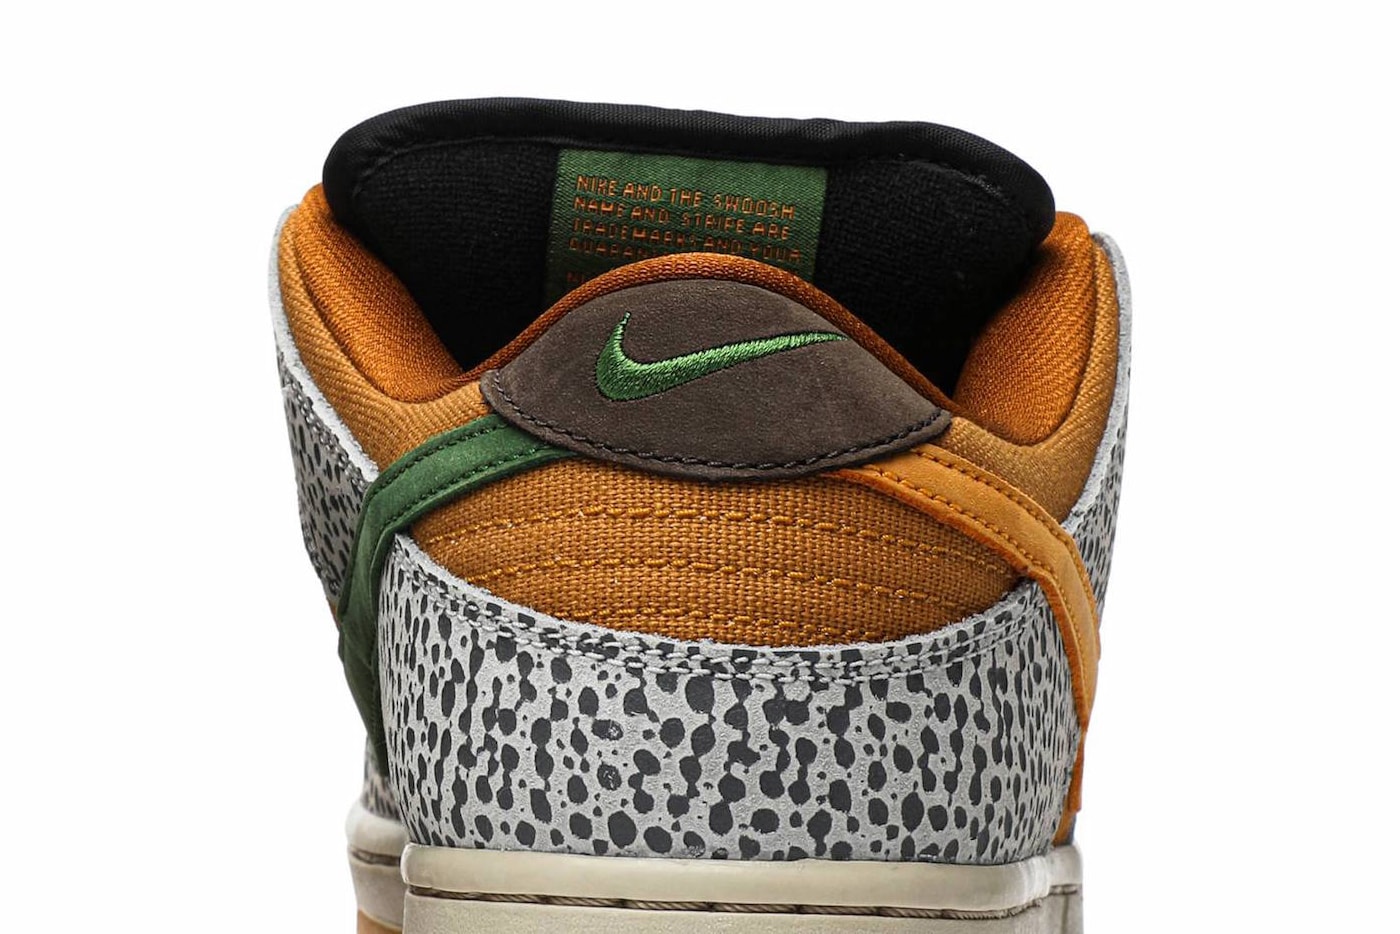 Nike SB Dunk Low 經典配色「Safari」發售日期正式曝光